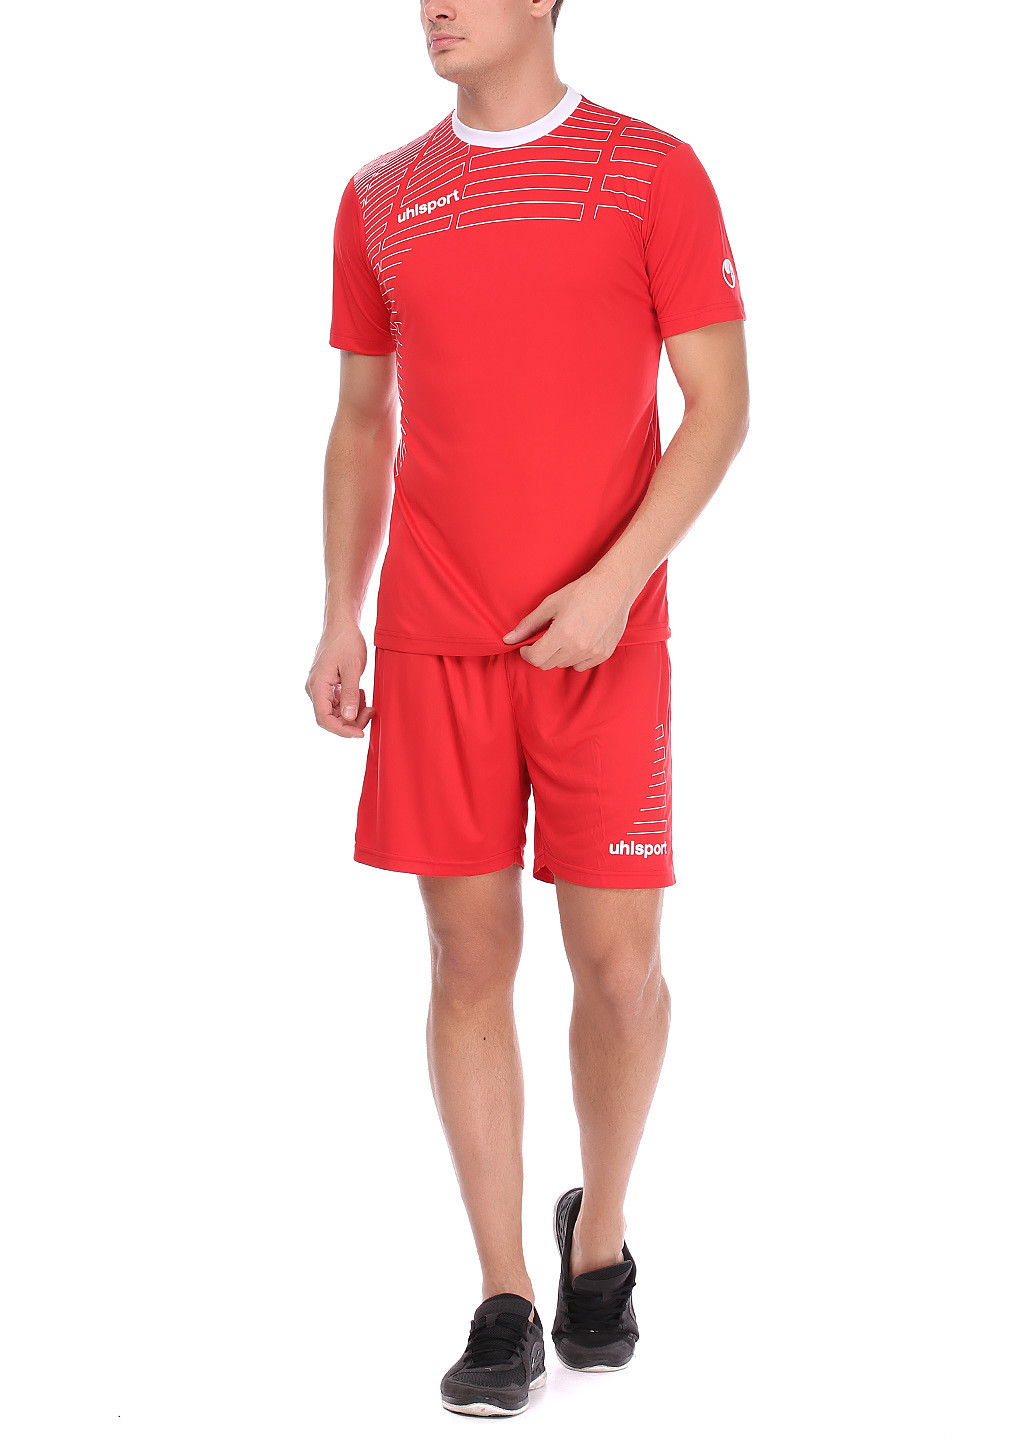 Червоний демісезонний костюм (футболка, шорты) з коротким рукавом Uhlsport